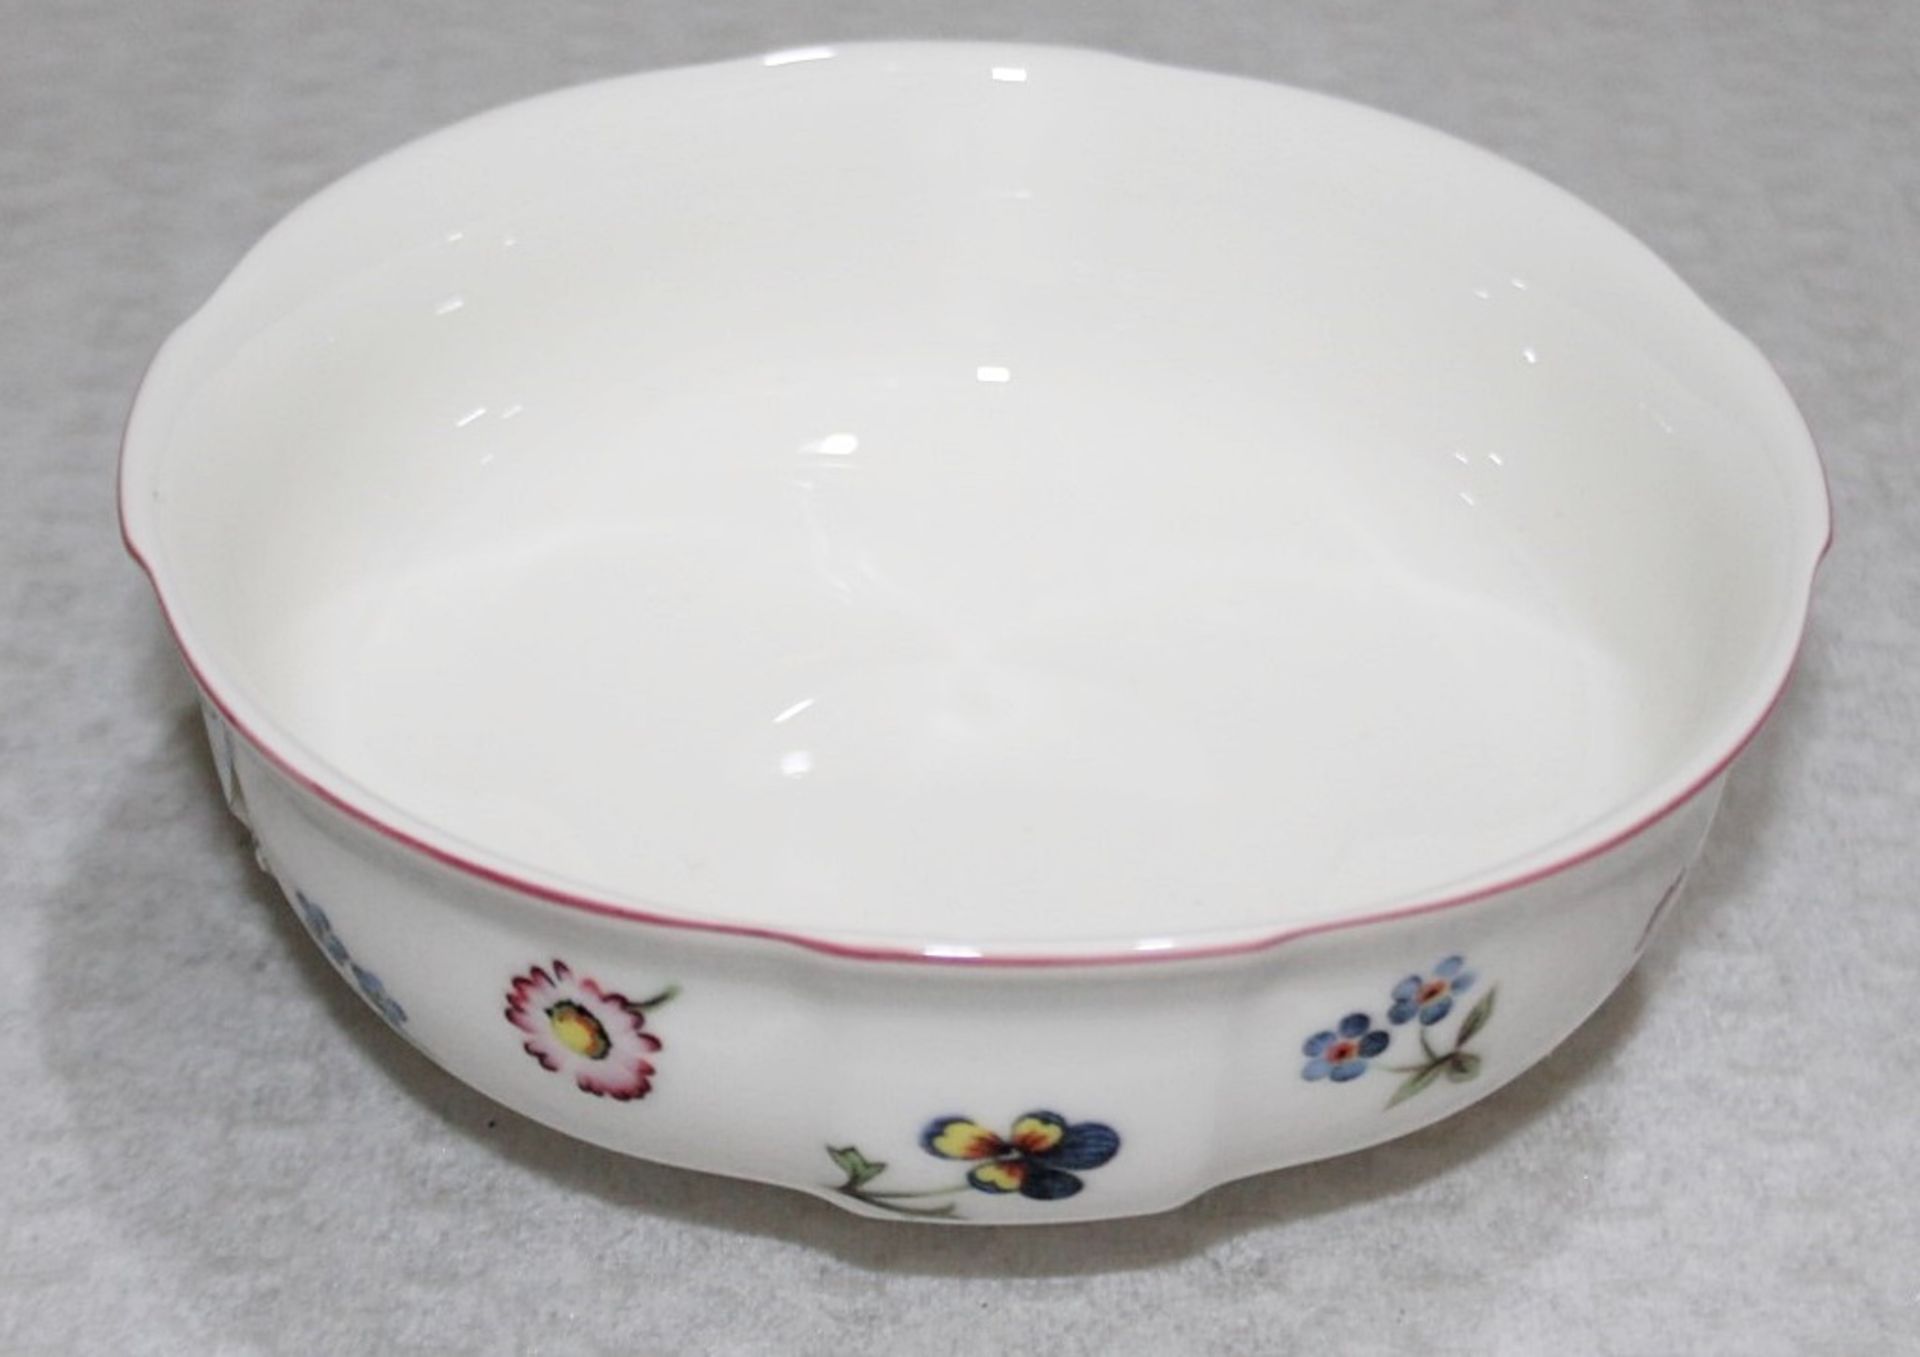 1 x VILLEROY & BOCH 'Petite Fleur' Premium Porcelain Bowl (ø15cm) - Unused Unboxed Stock - Ref: - Image 2 of 5